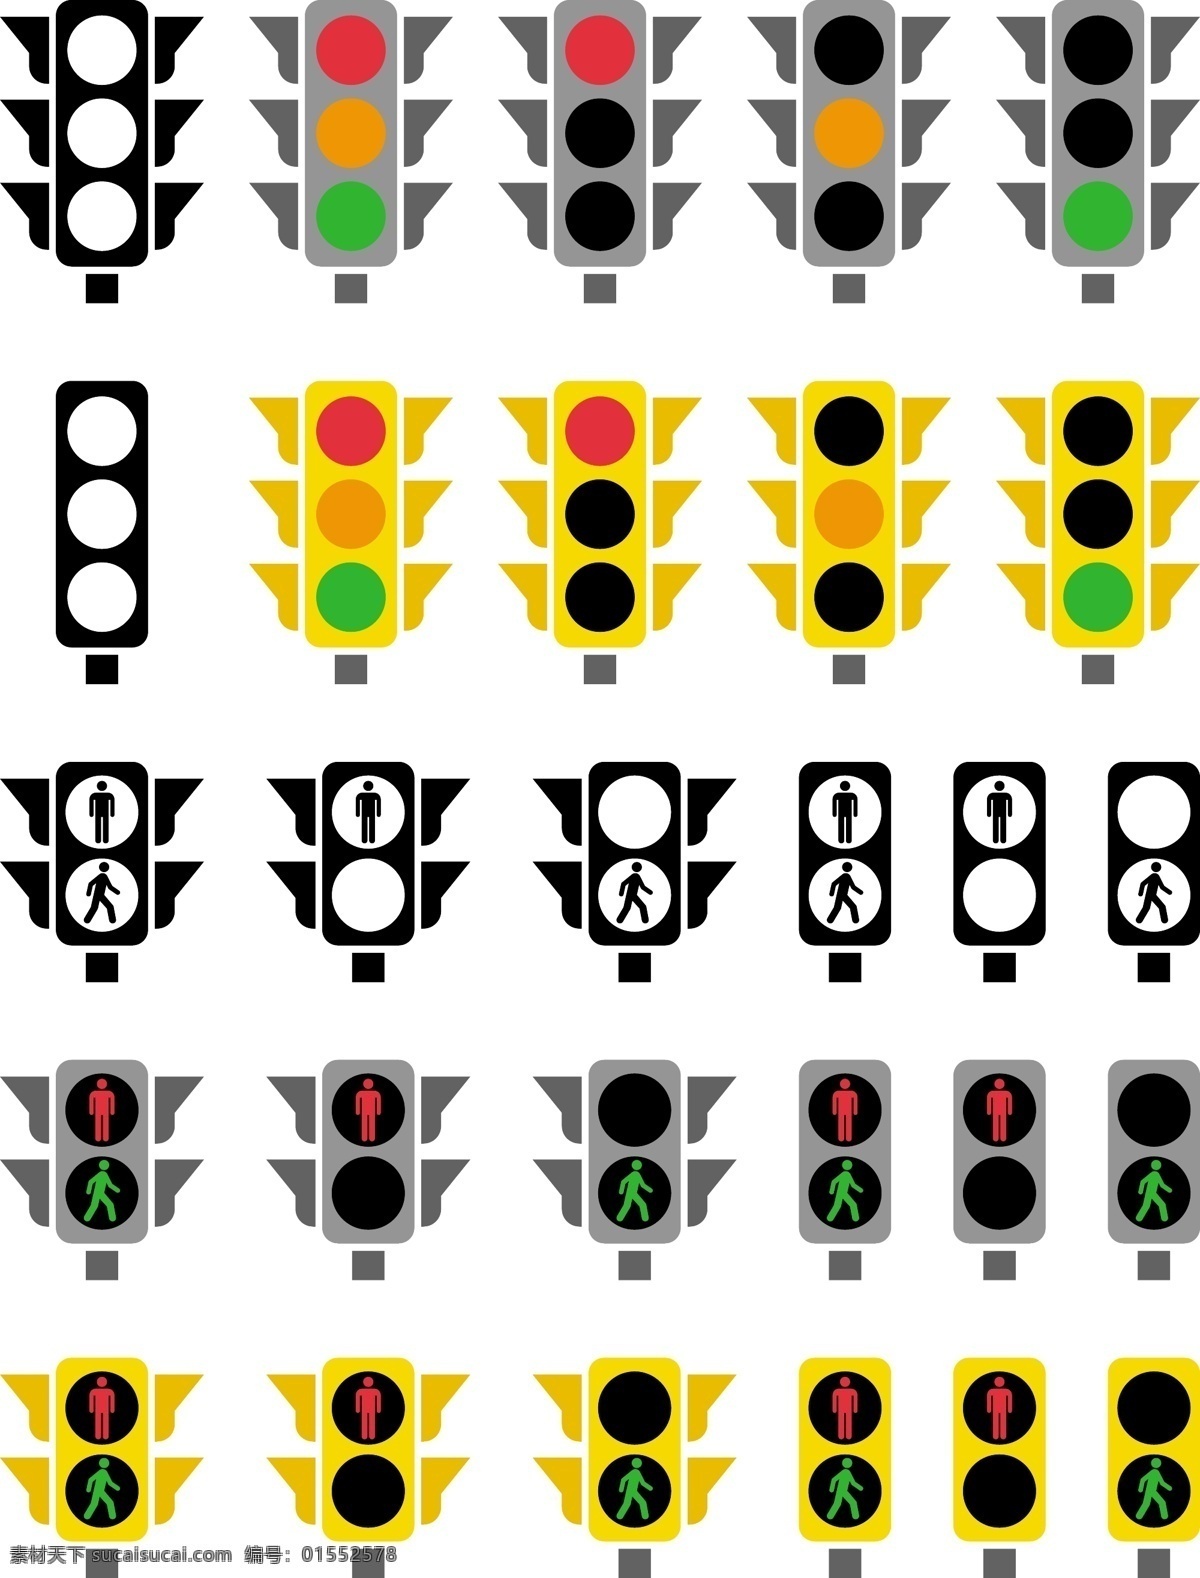 红绿灯 指示灯 红灯 绿灯 黄灯 交通灯 安全 秩序 路口 指示 通行 禁止 矢量